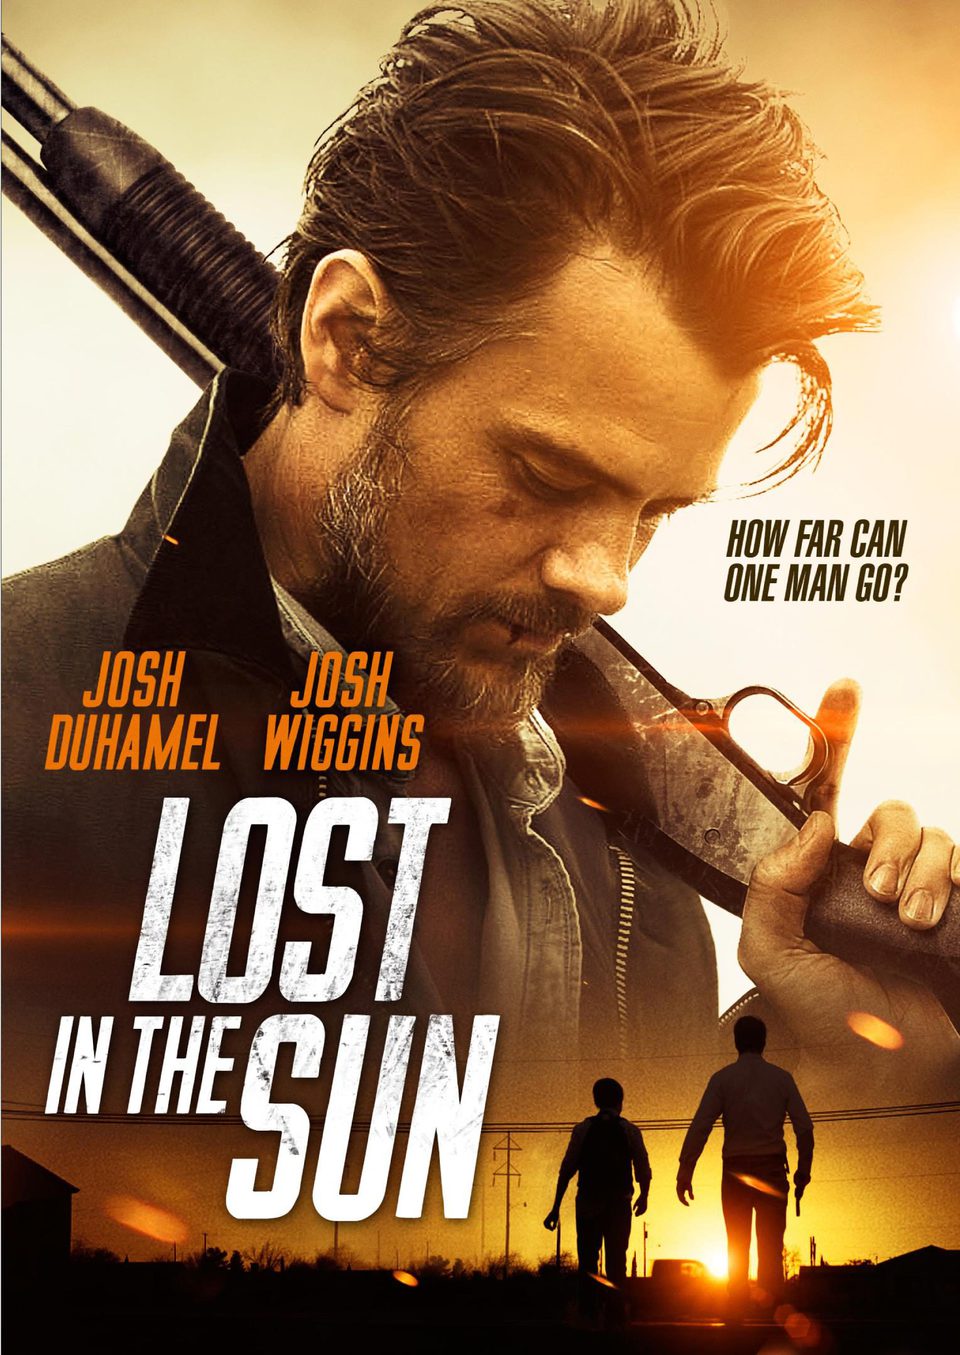 Cartel Estados Unidos de 'Lost in the sun'